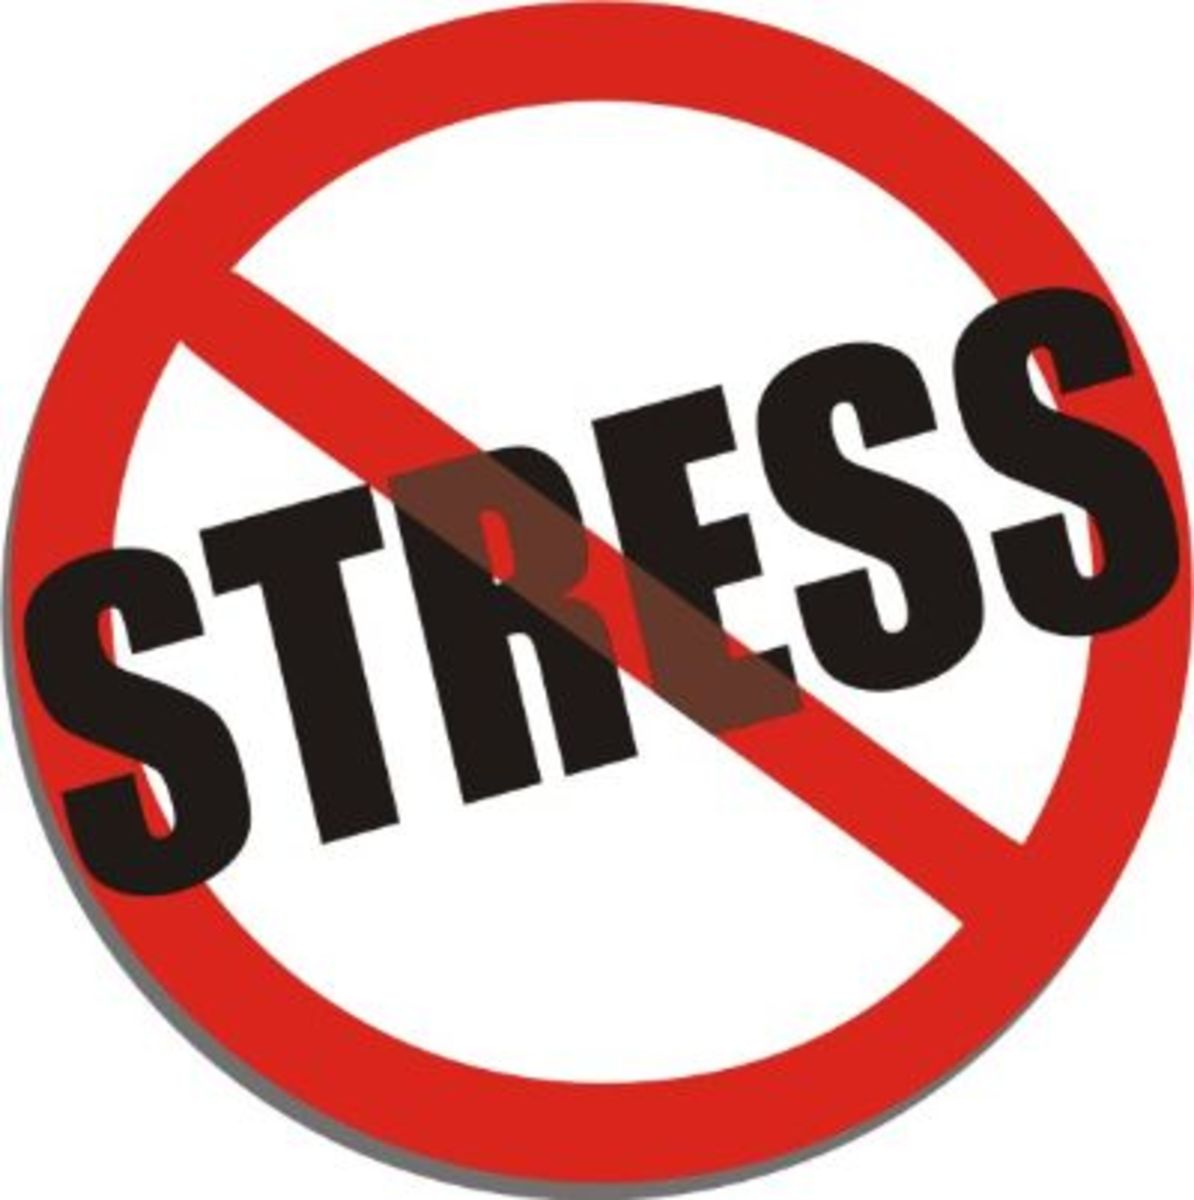 Say No To Stress!